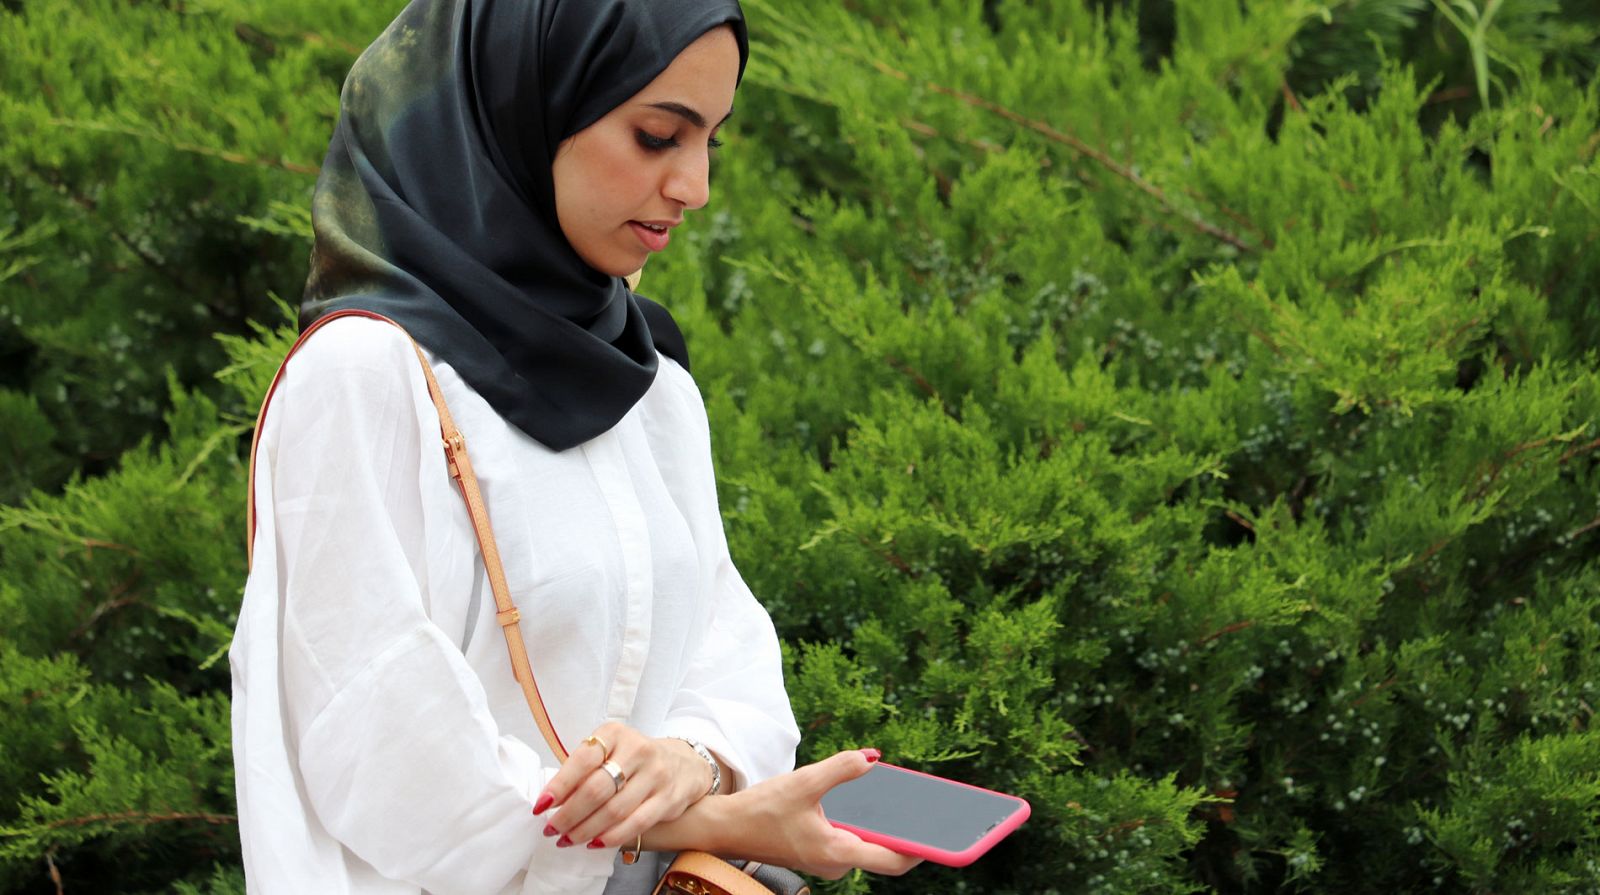 Una adolescente amenazada en Francia por despreciar el Islam en las redes sociales